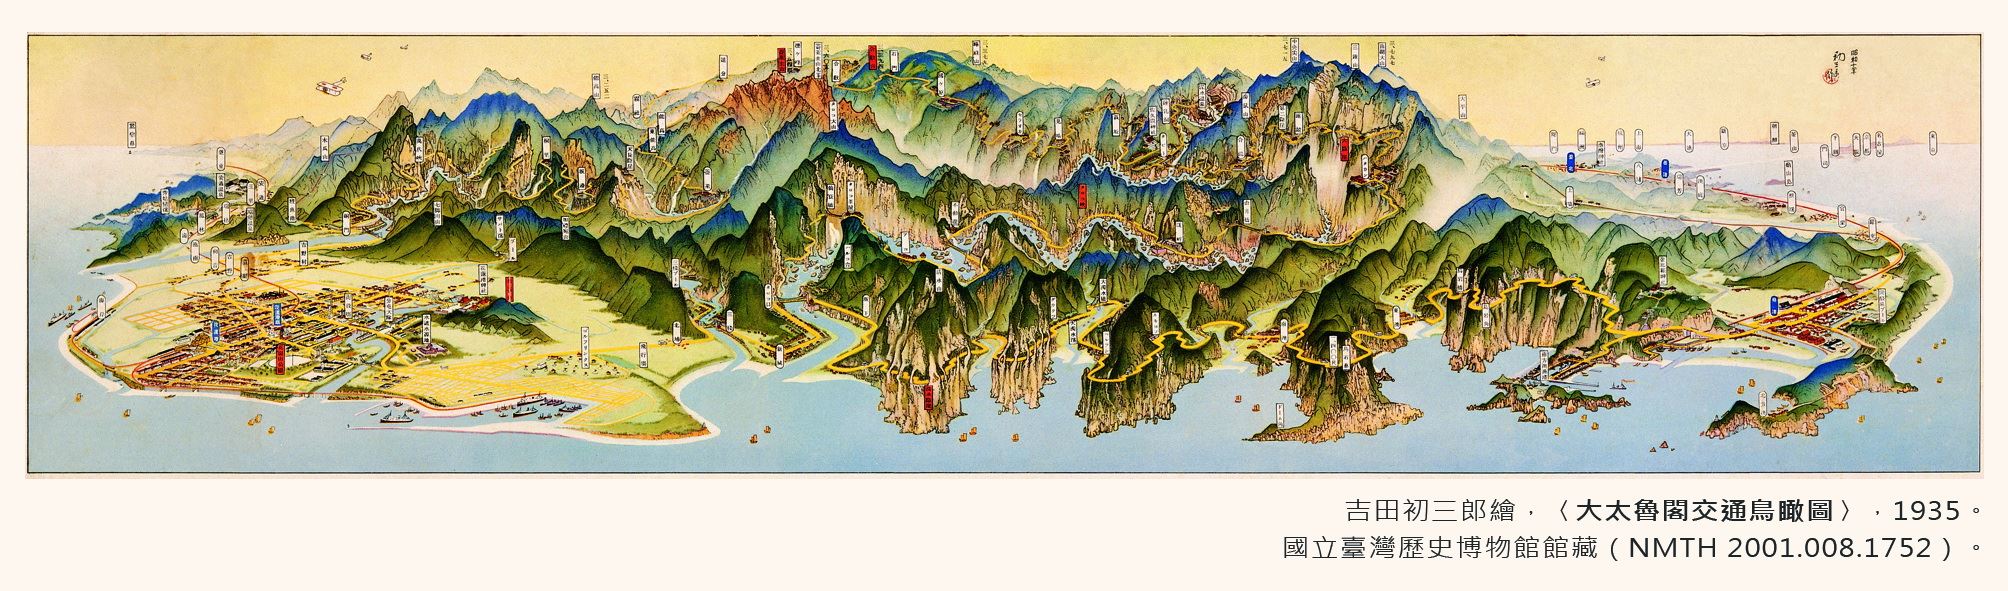 地圖書籤8(1935年-太魯閣)